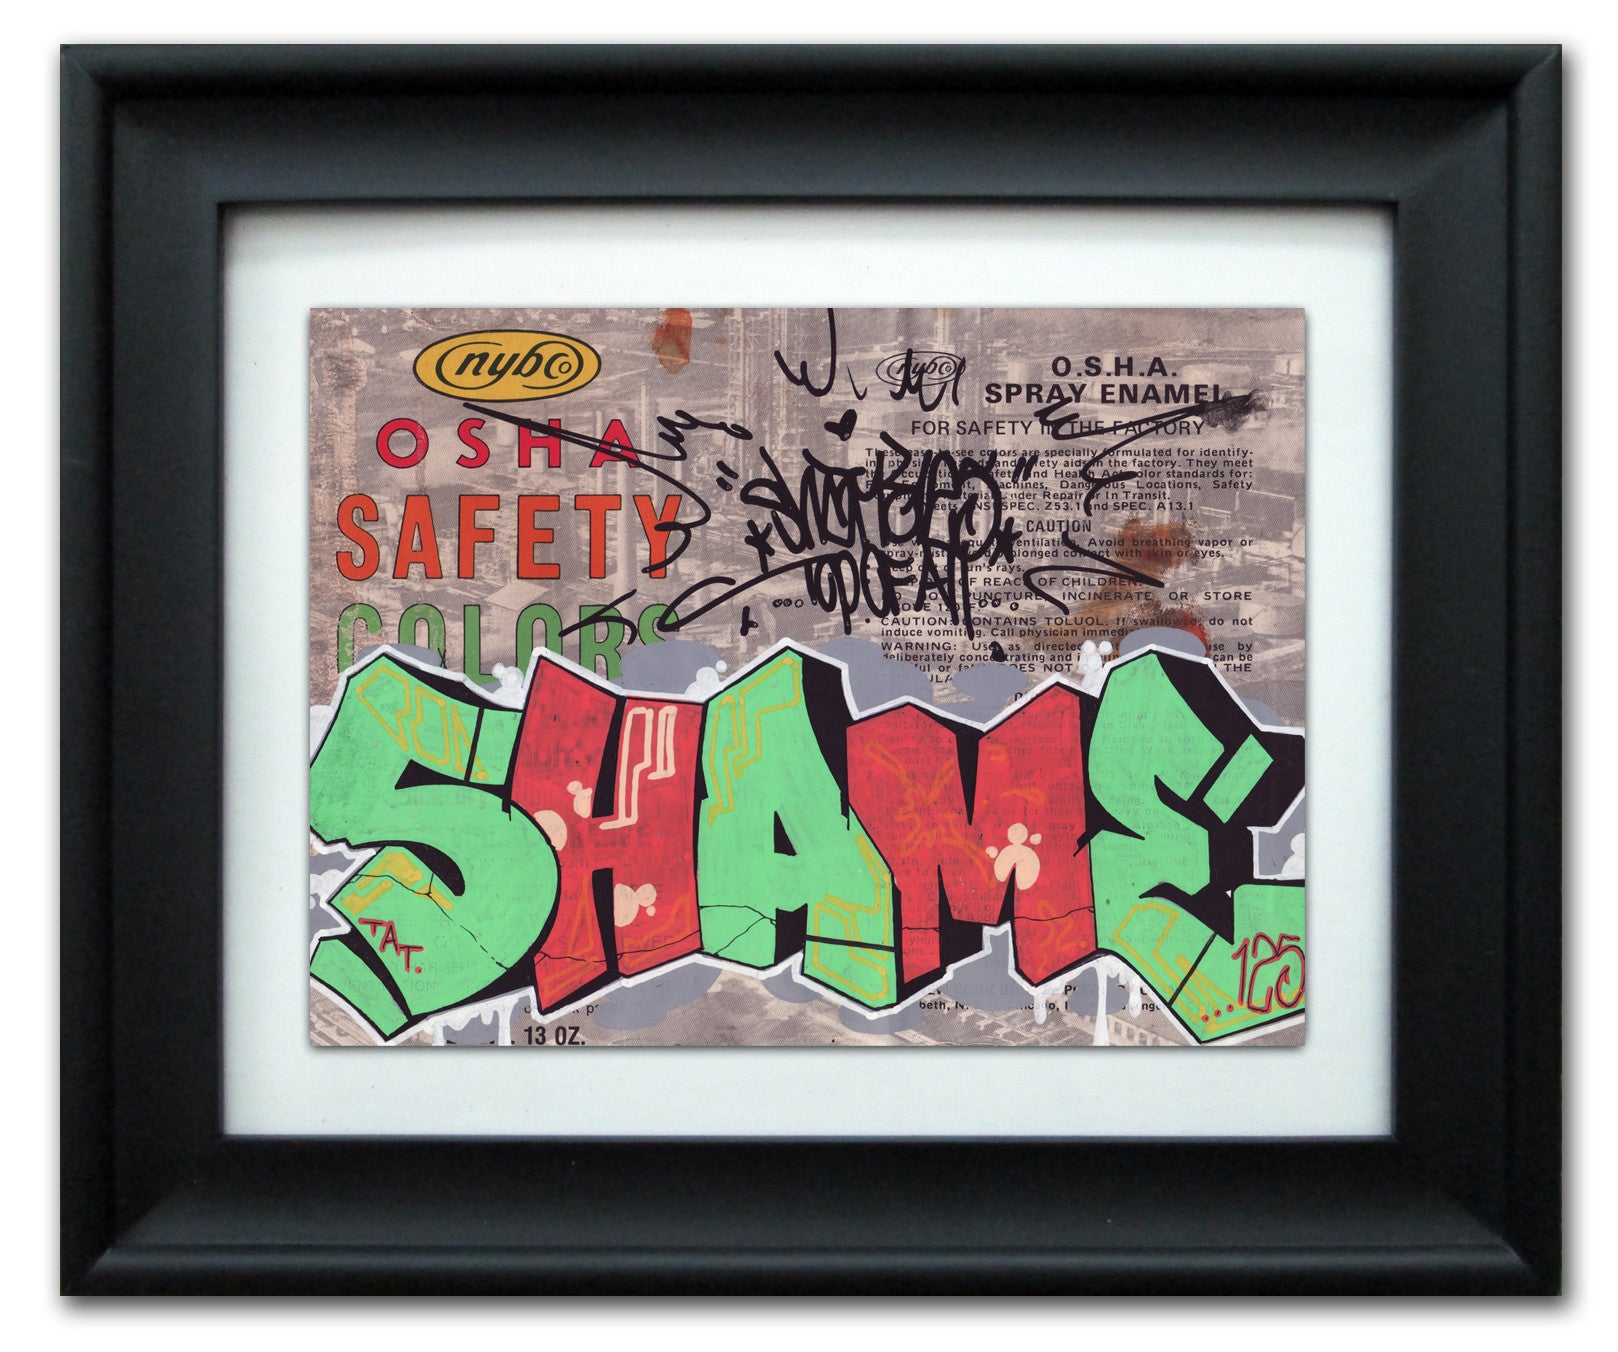 SHAME 125 - "NYBco" Vintage Label